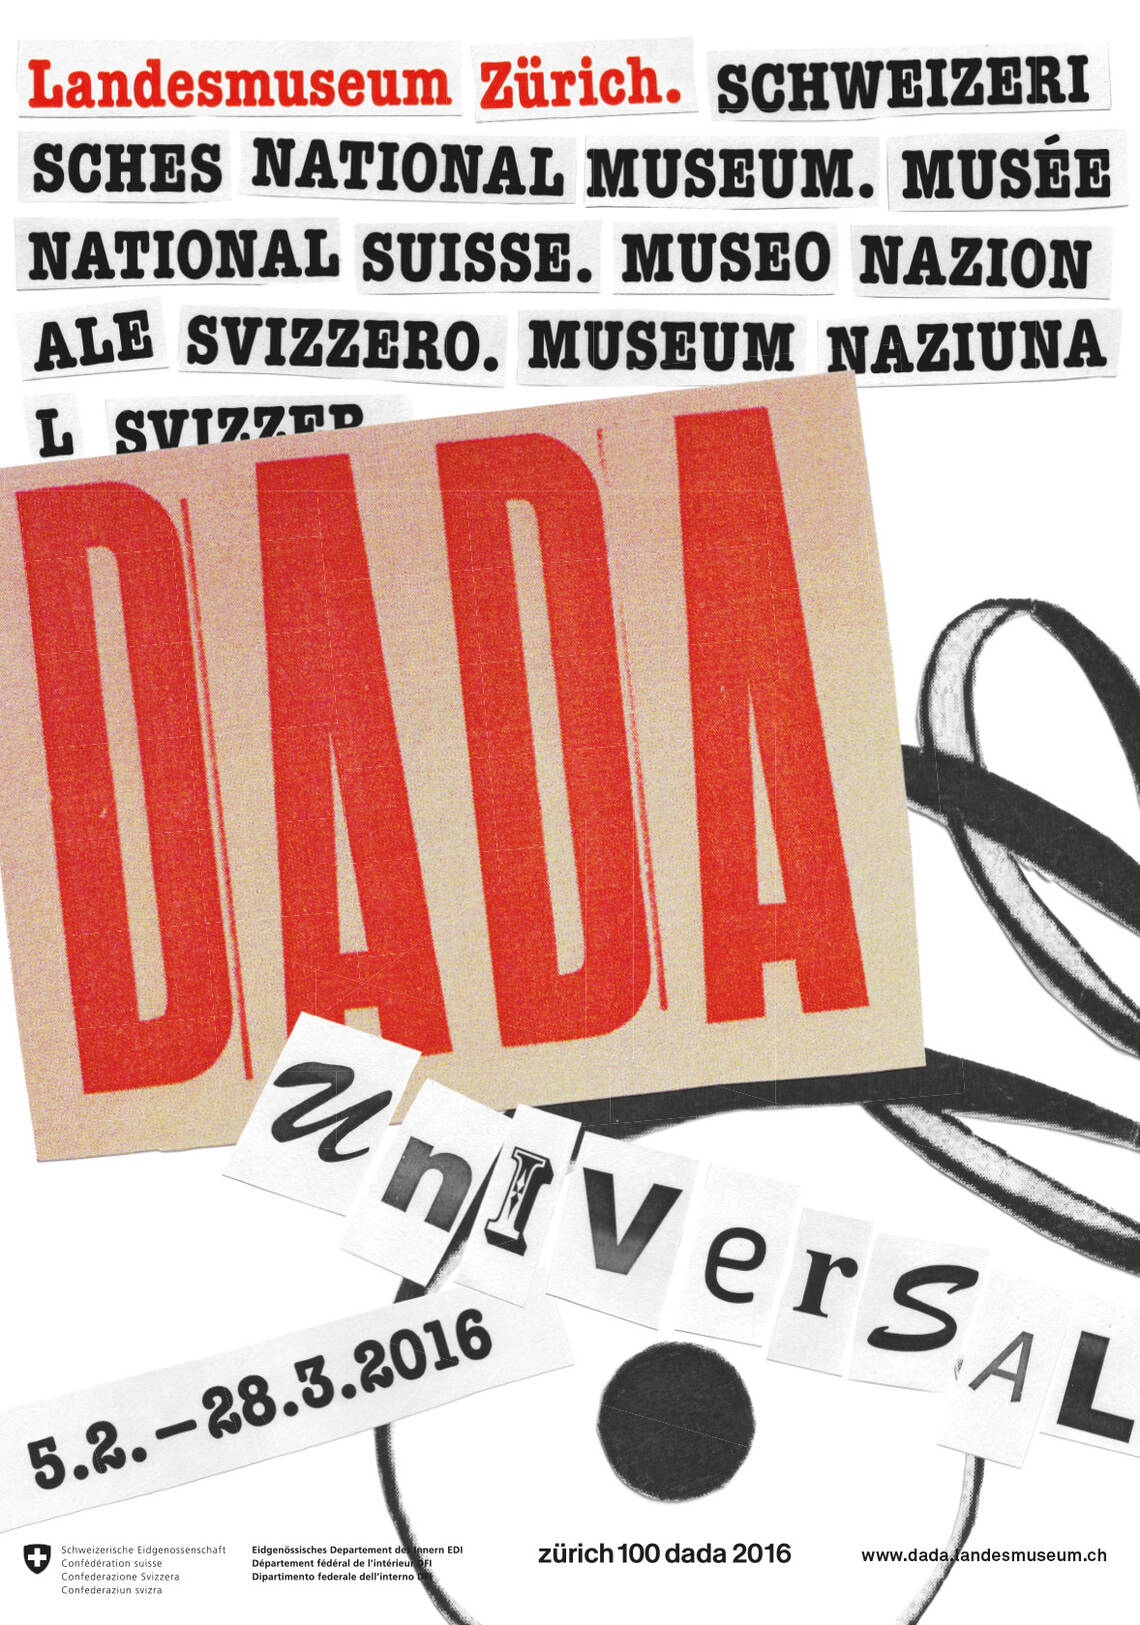 Affiche de l'exposition "Dada Universal